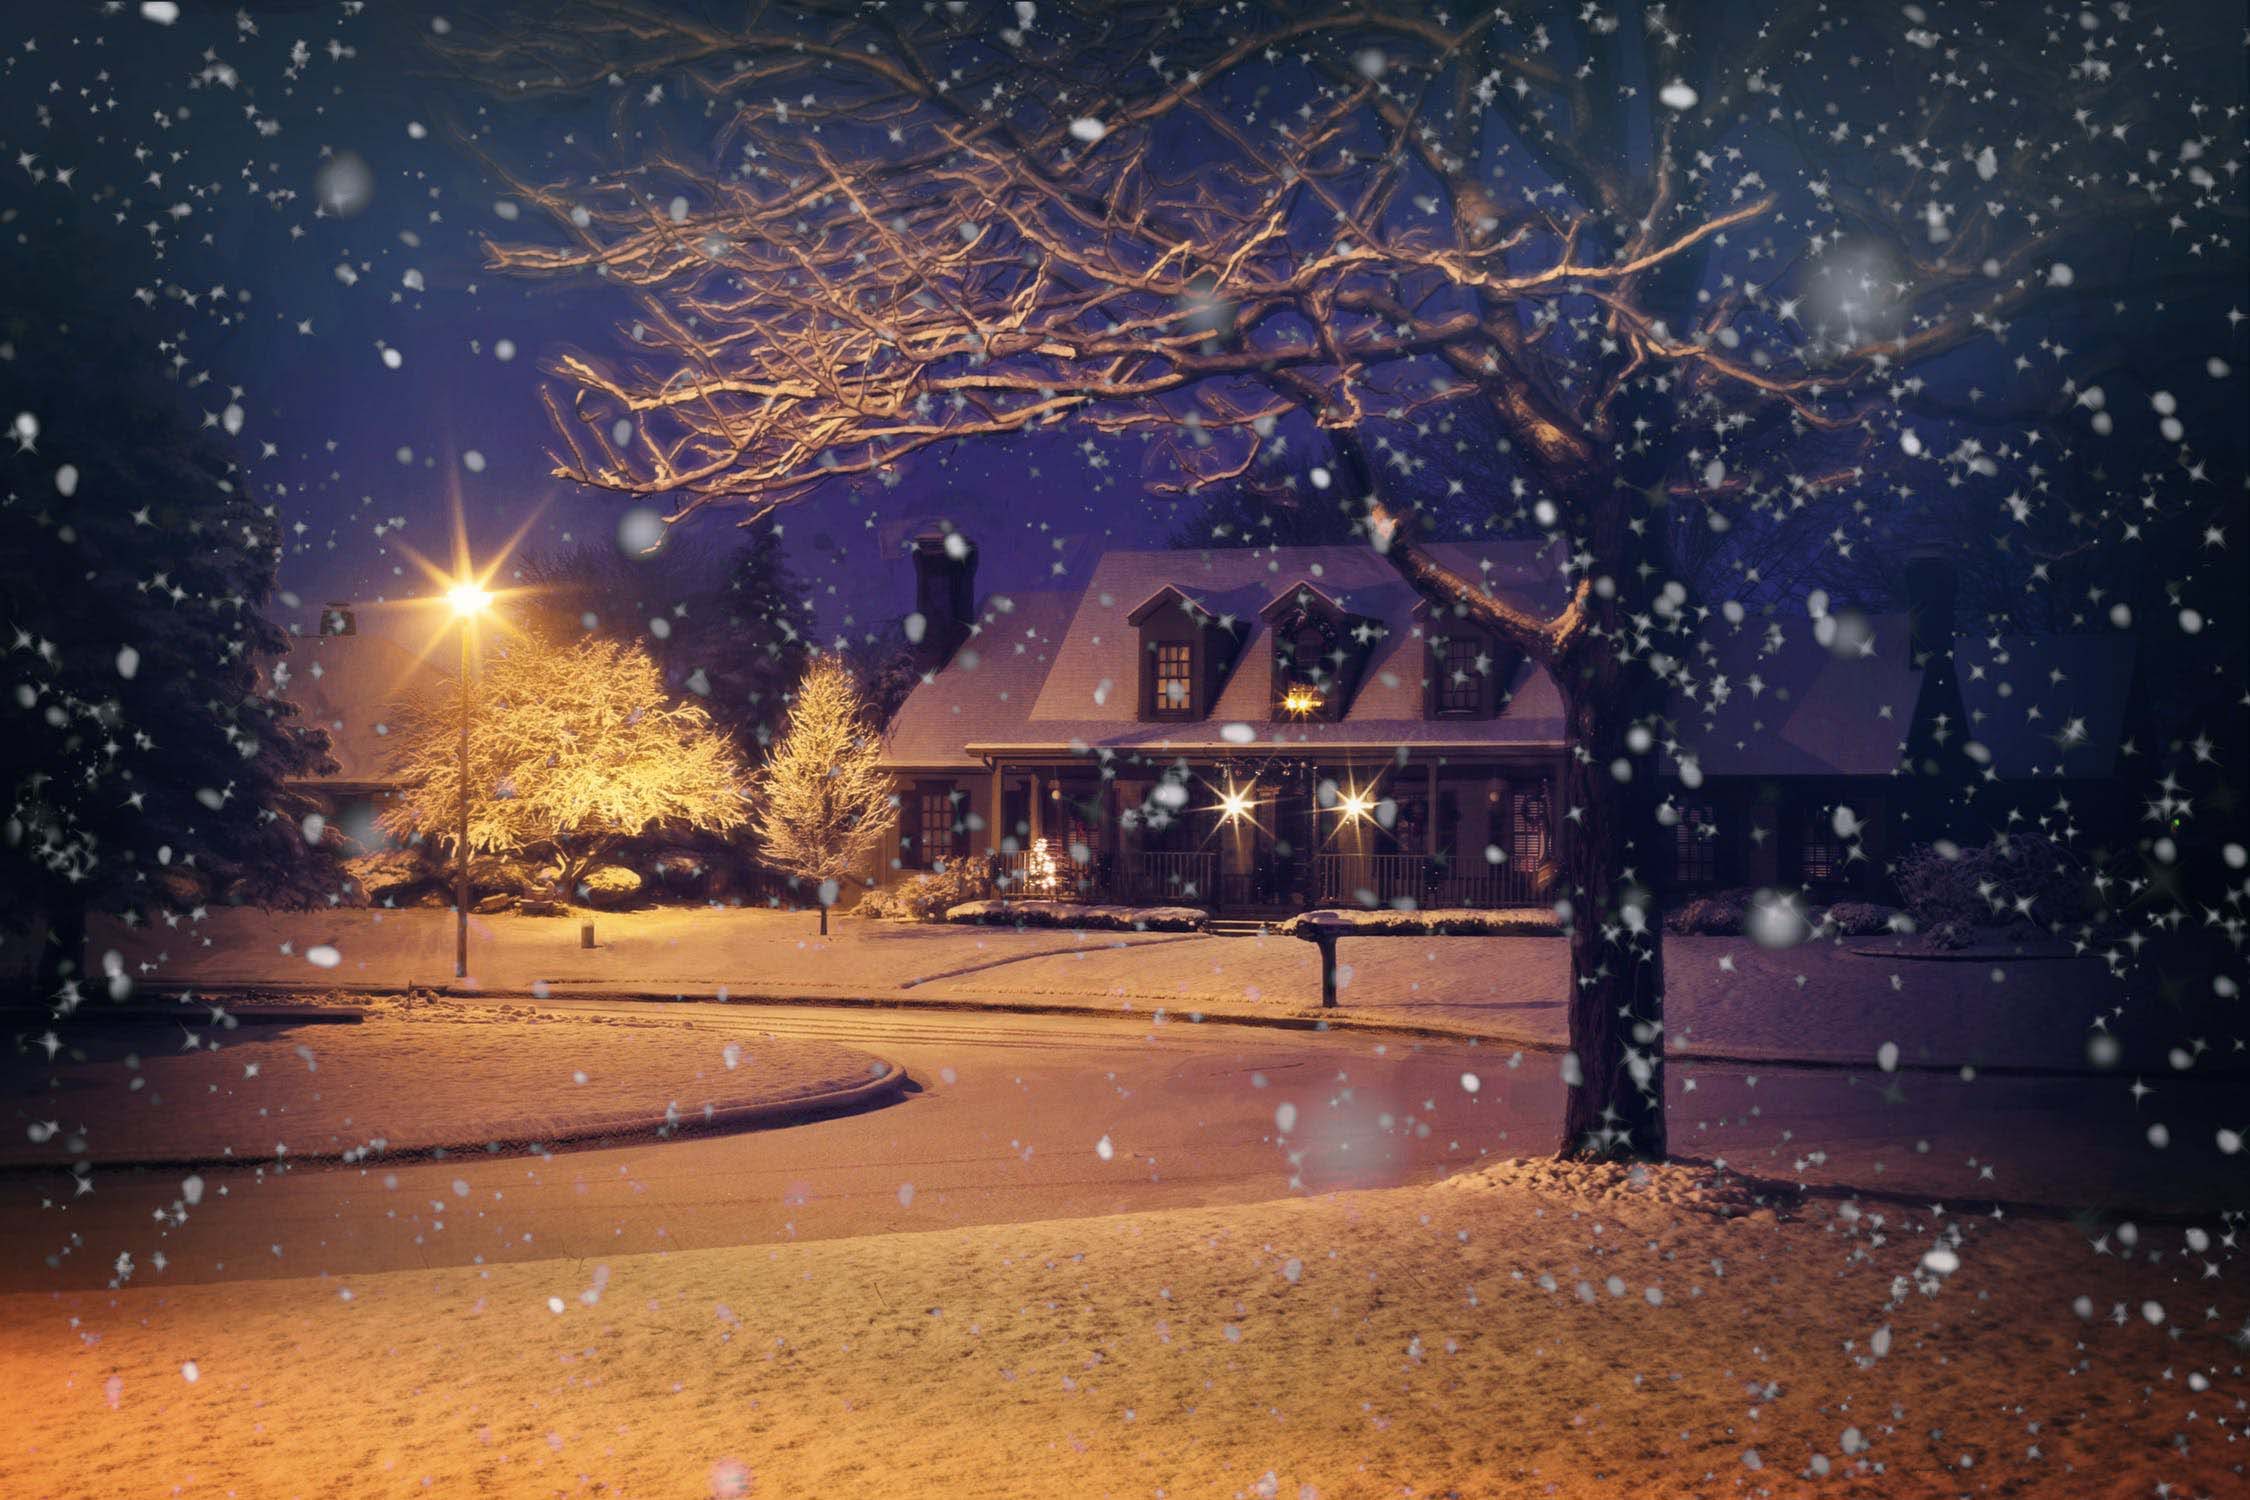 Tổng hợp hình ảnh mùa đông đẹp nhất - Ảnh đẹp mùa đông